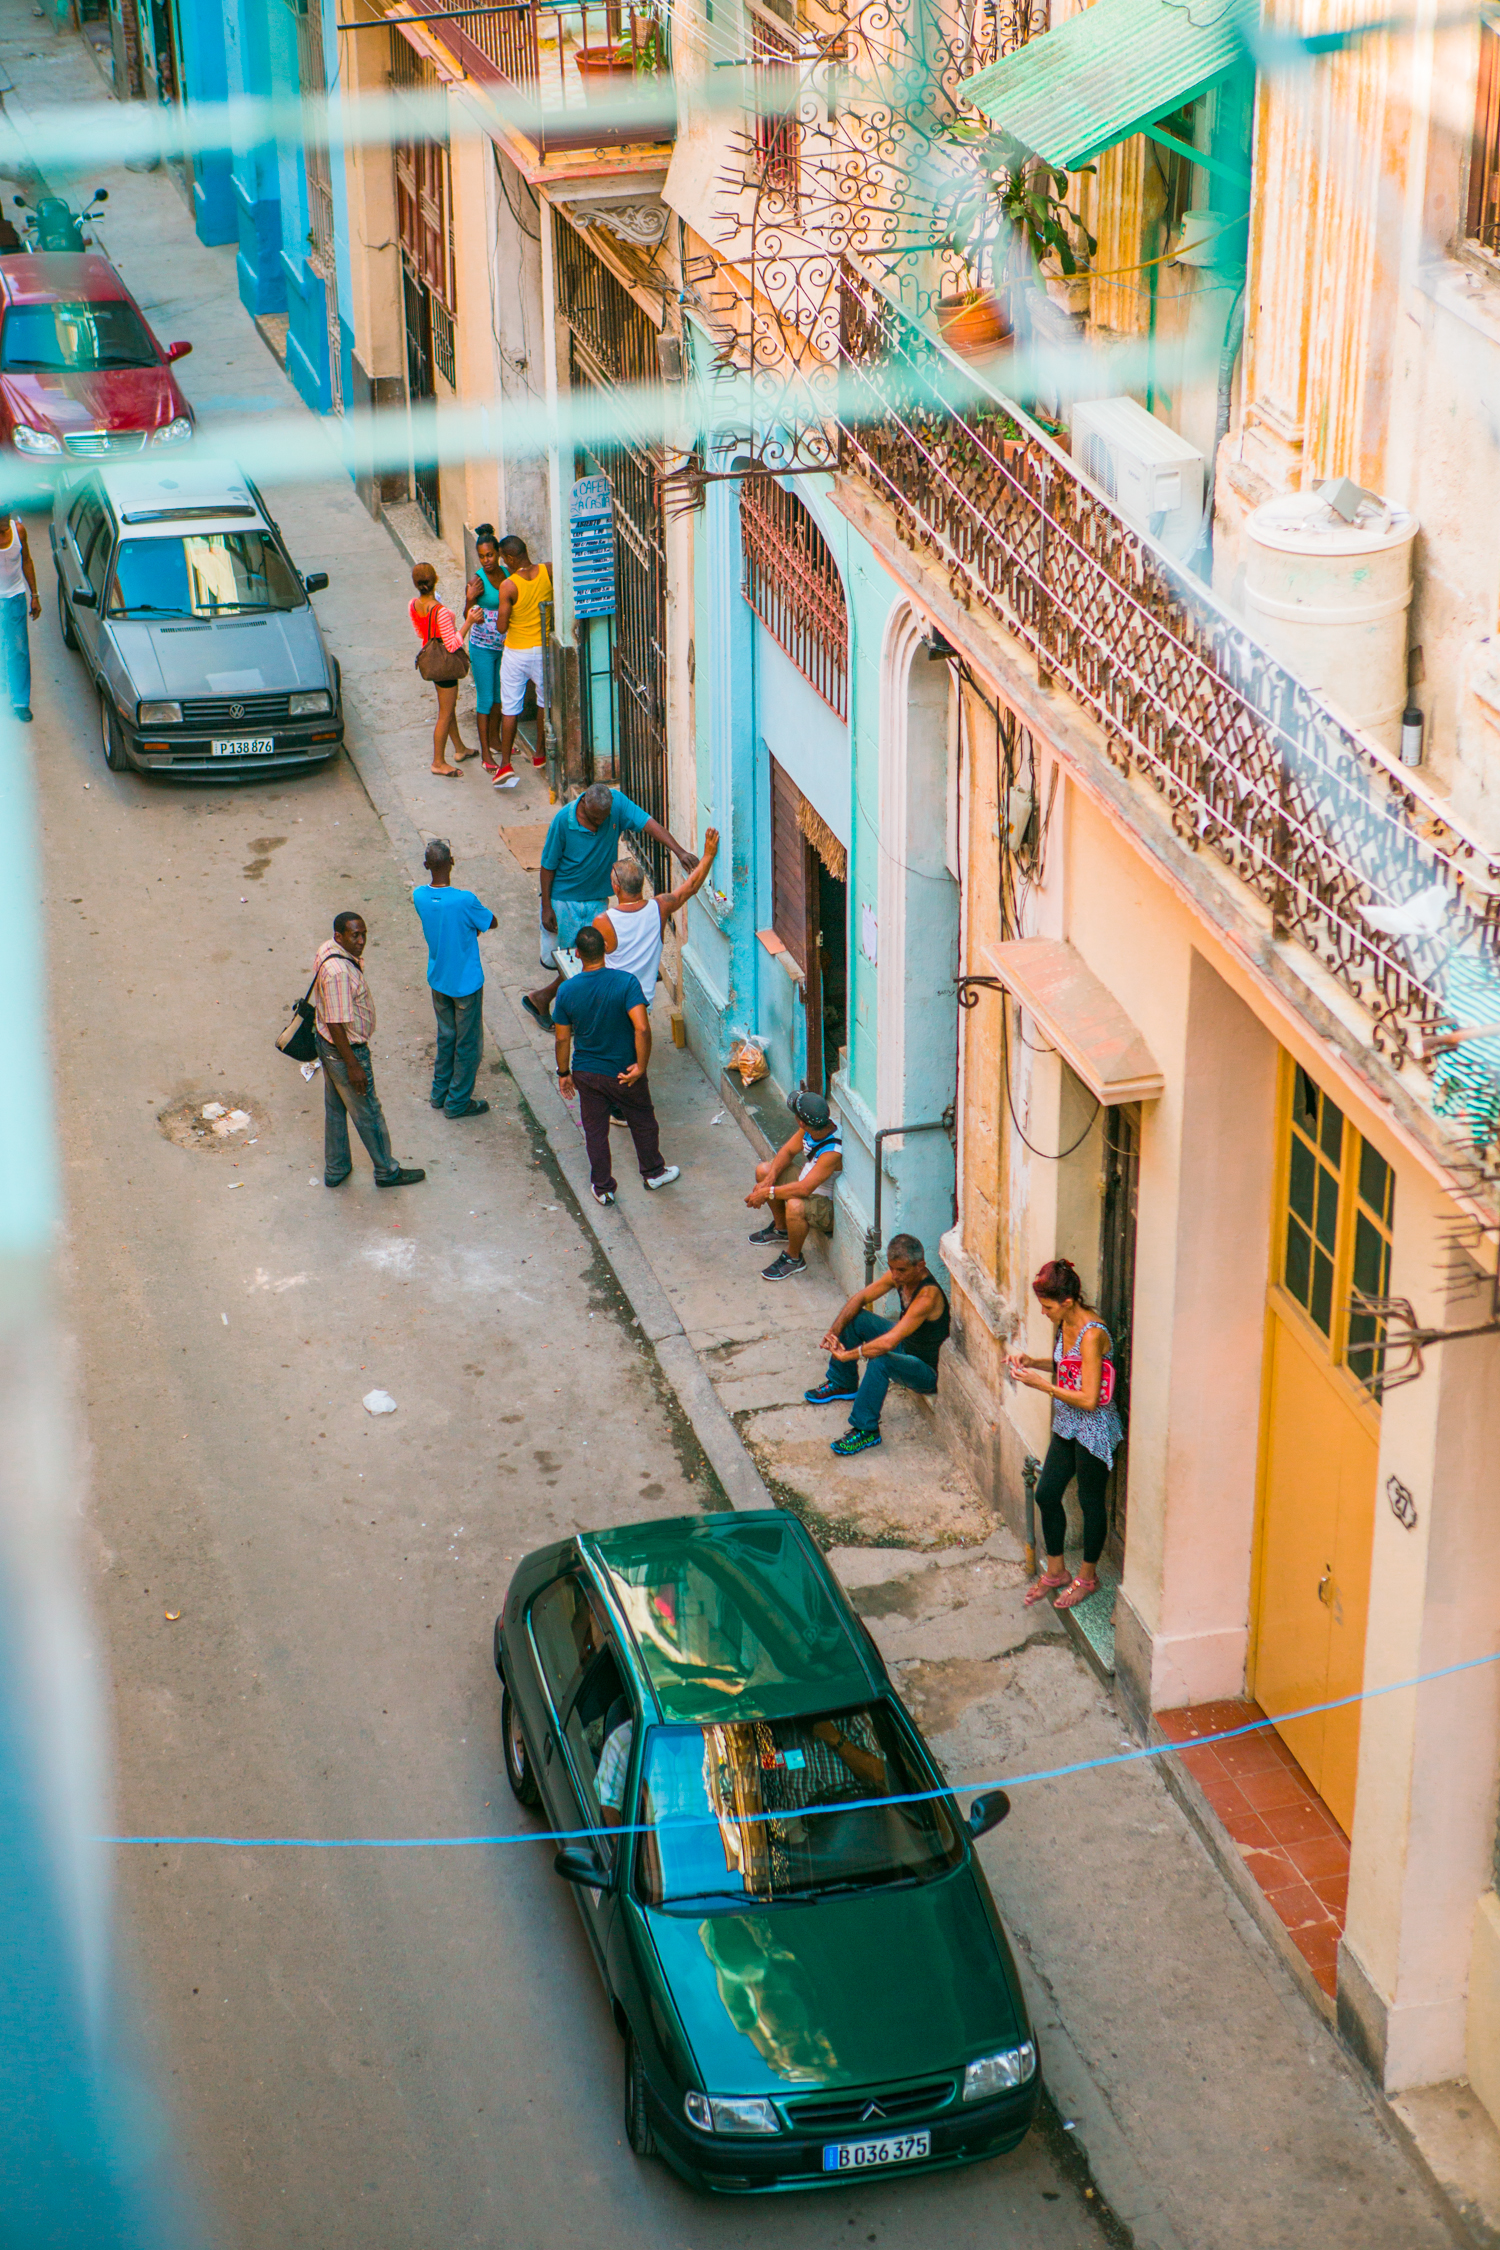 Havana Cuba Photos, so then they say